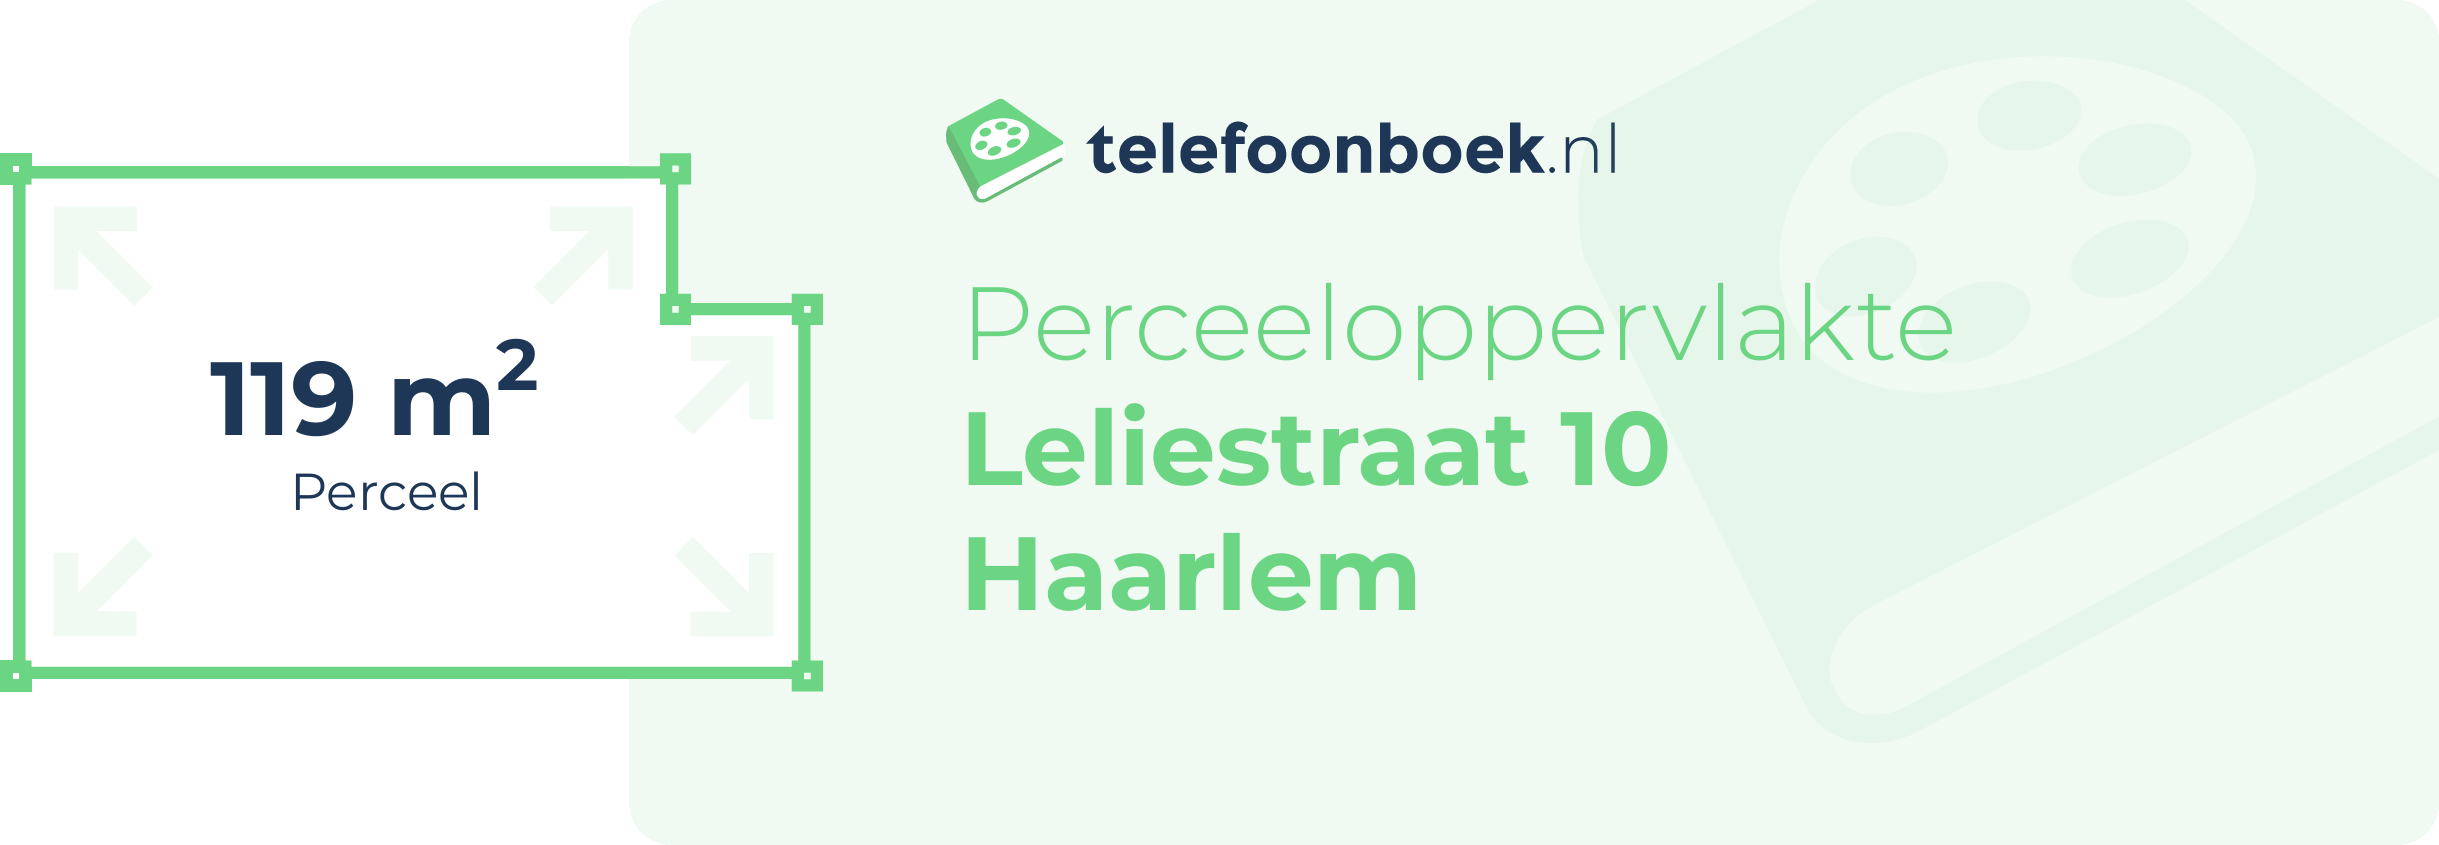 Perceeloppervlakte Leliestraat 10 Haarlem